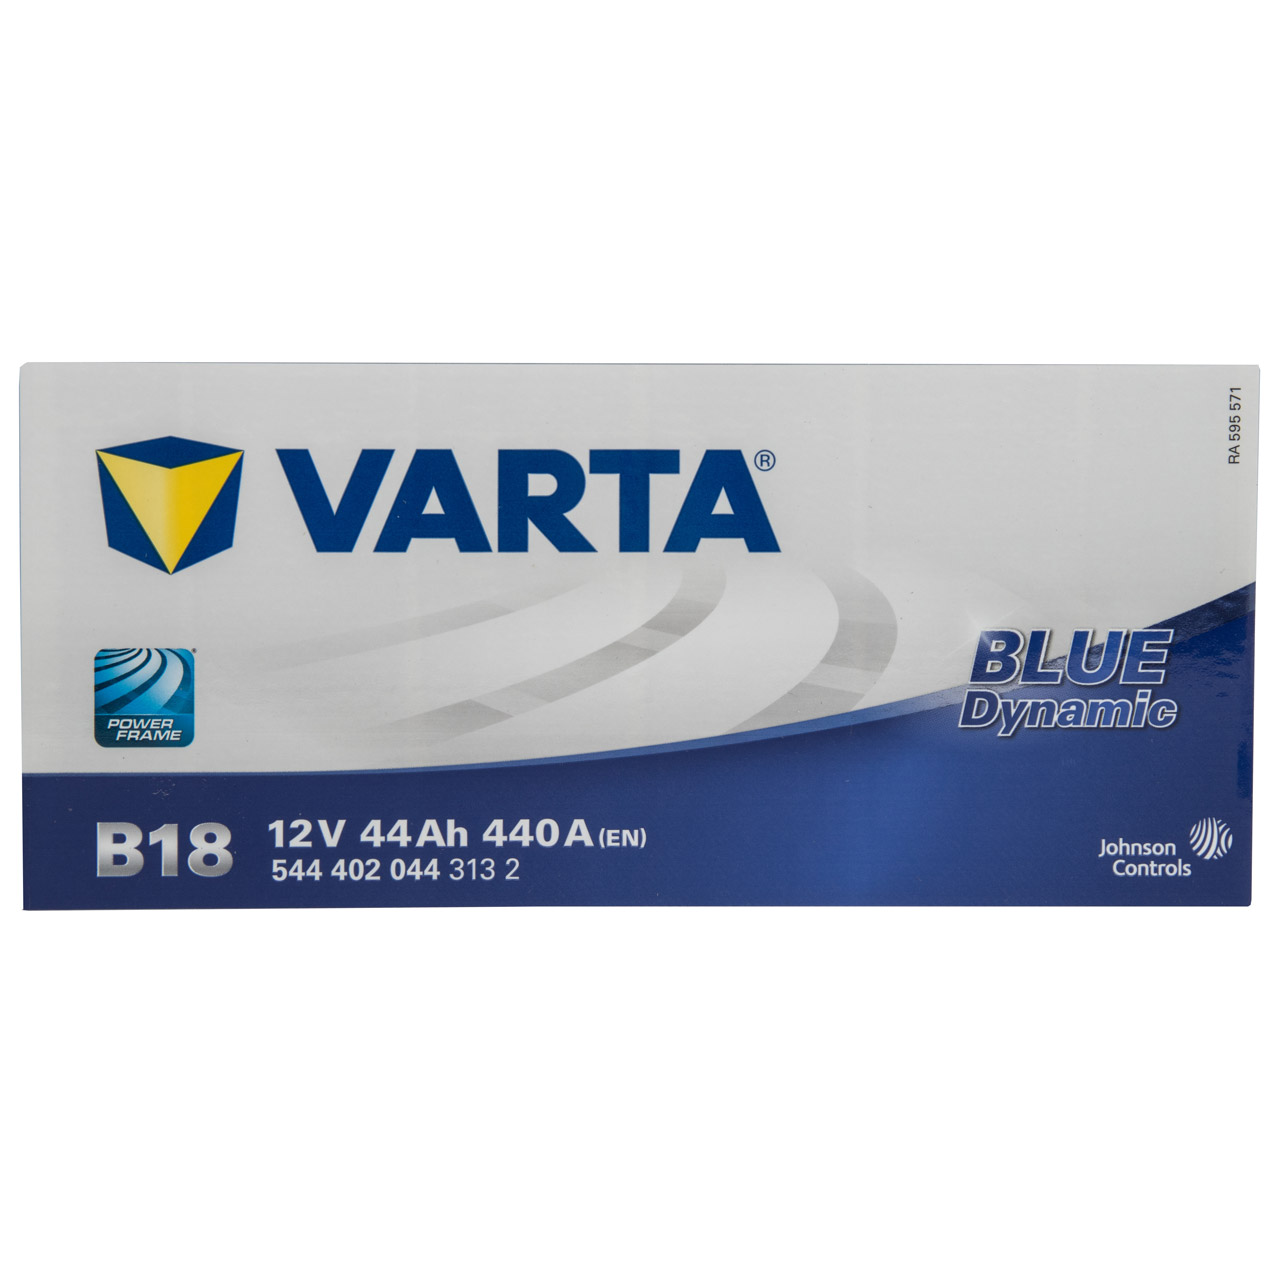 VARTA Starterbatterien / Autobatterien - 5444020443132 - ws